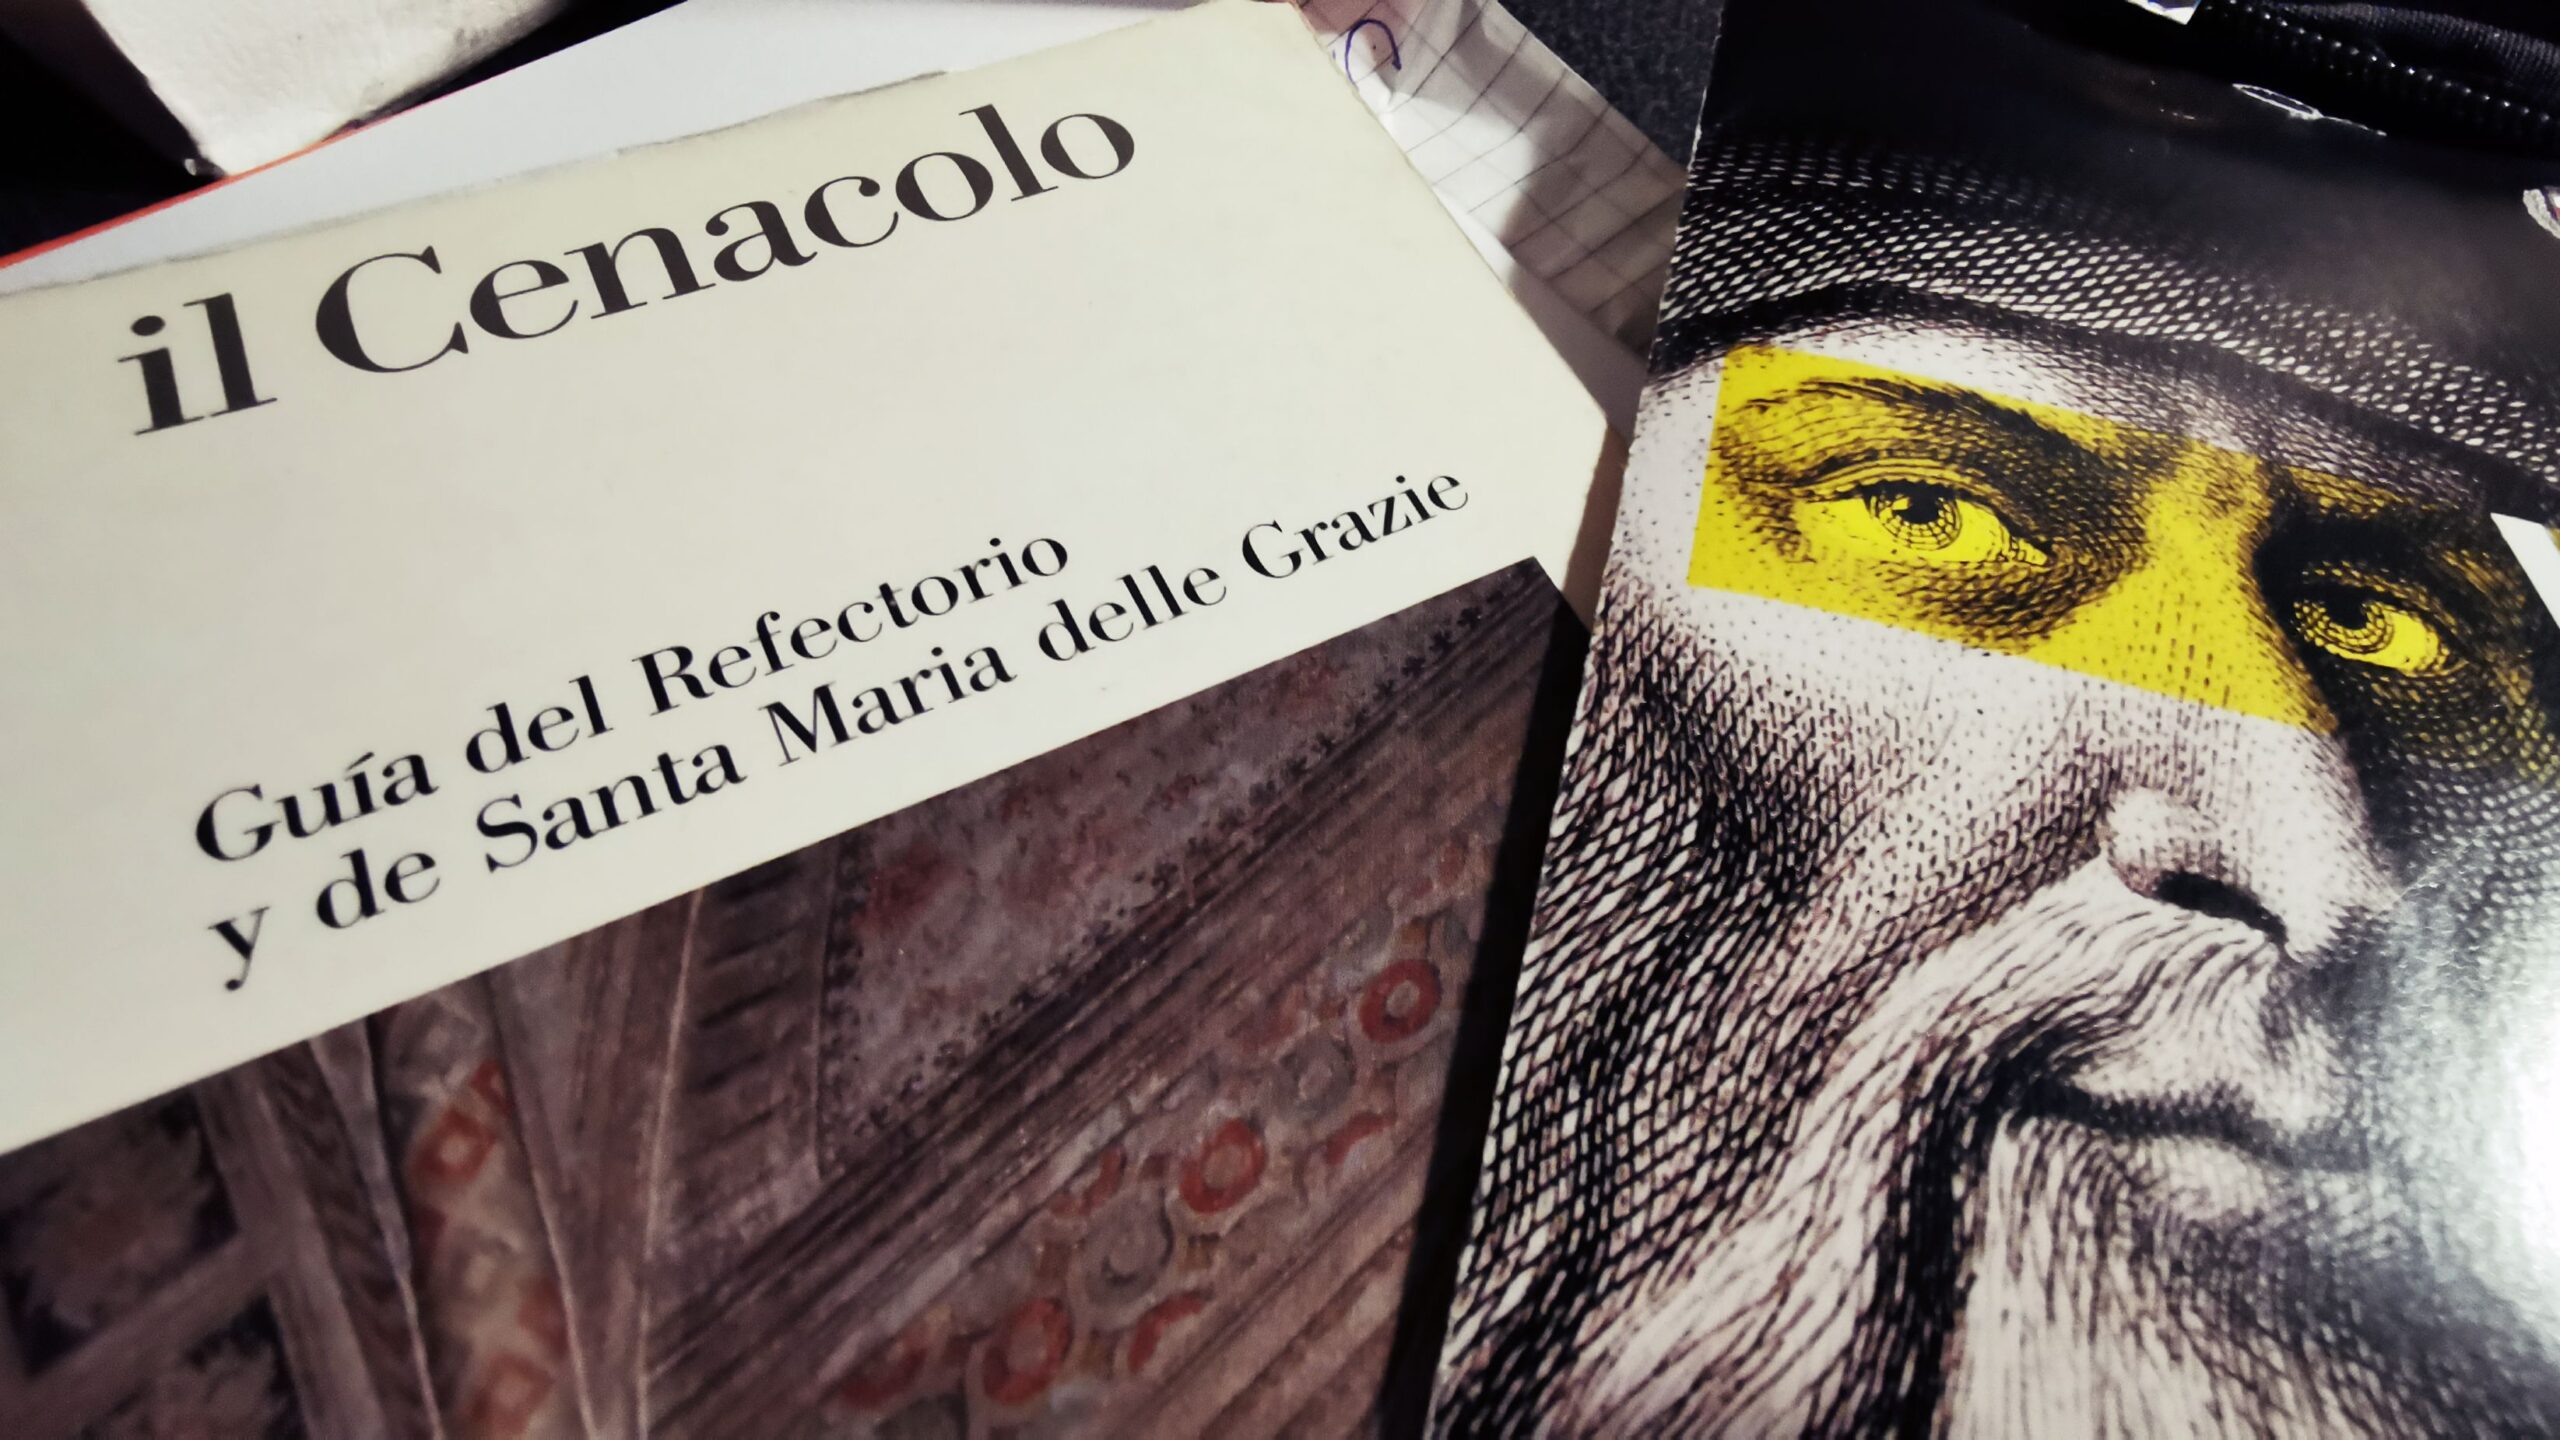 Las obras de Leonardo Da Vinci en Milán